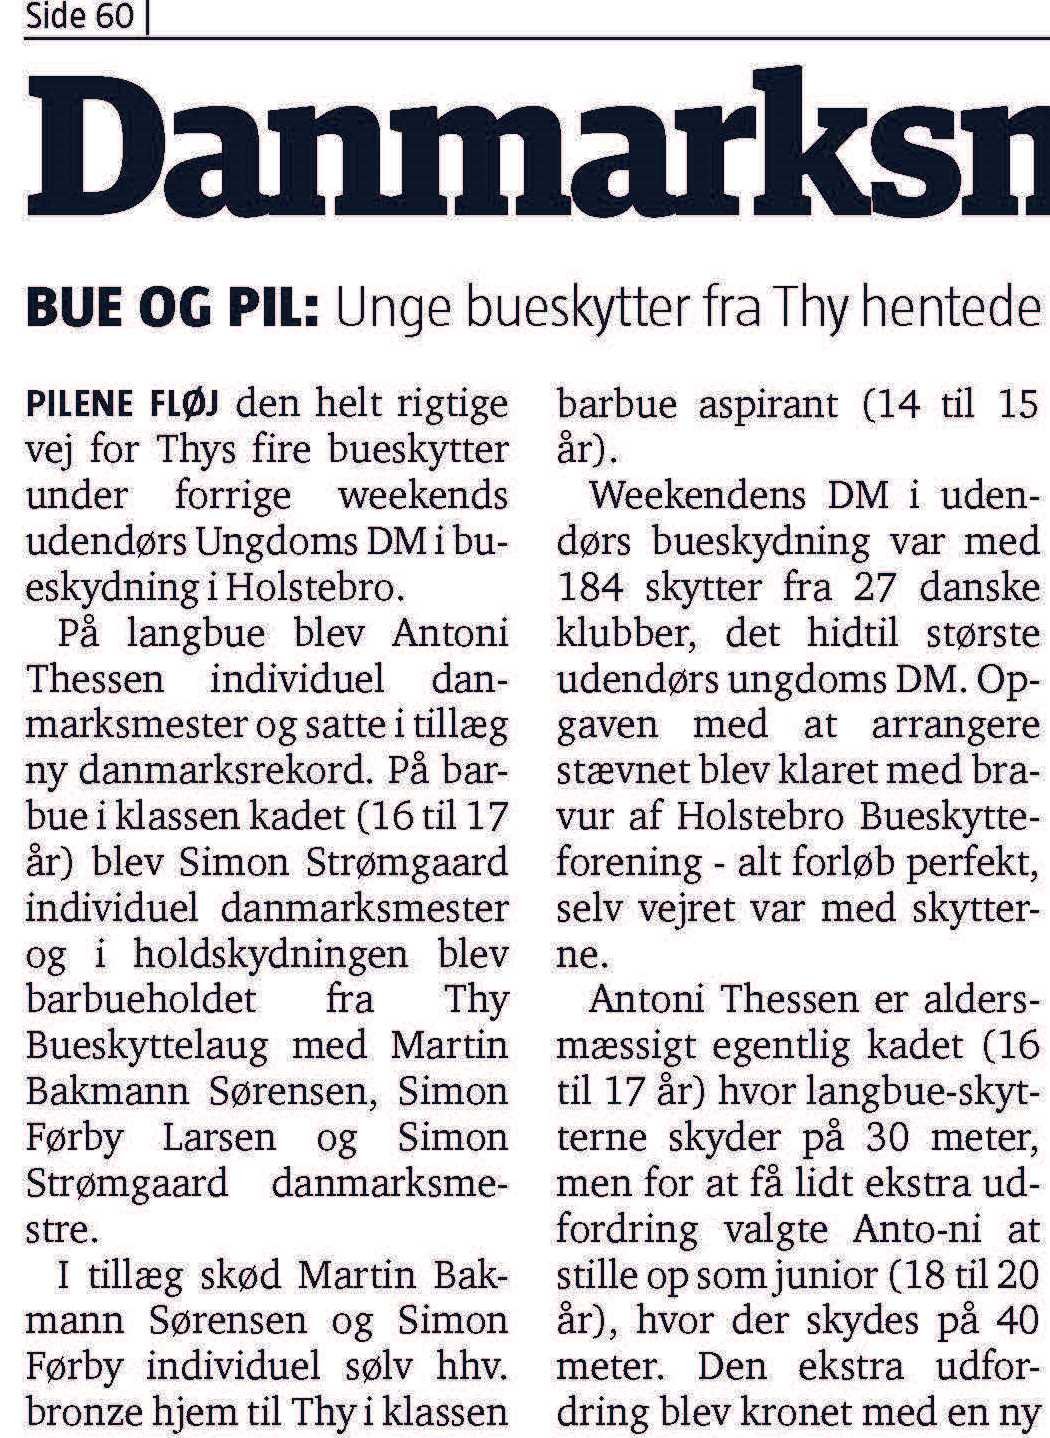 Unge bueskytter fra Thy - Danmarksmestre på stribe – Thisted Posten d. 11/9-2019